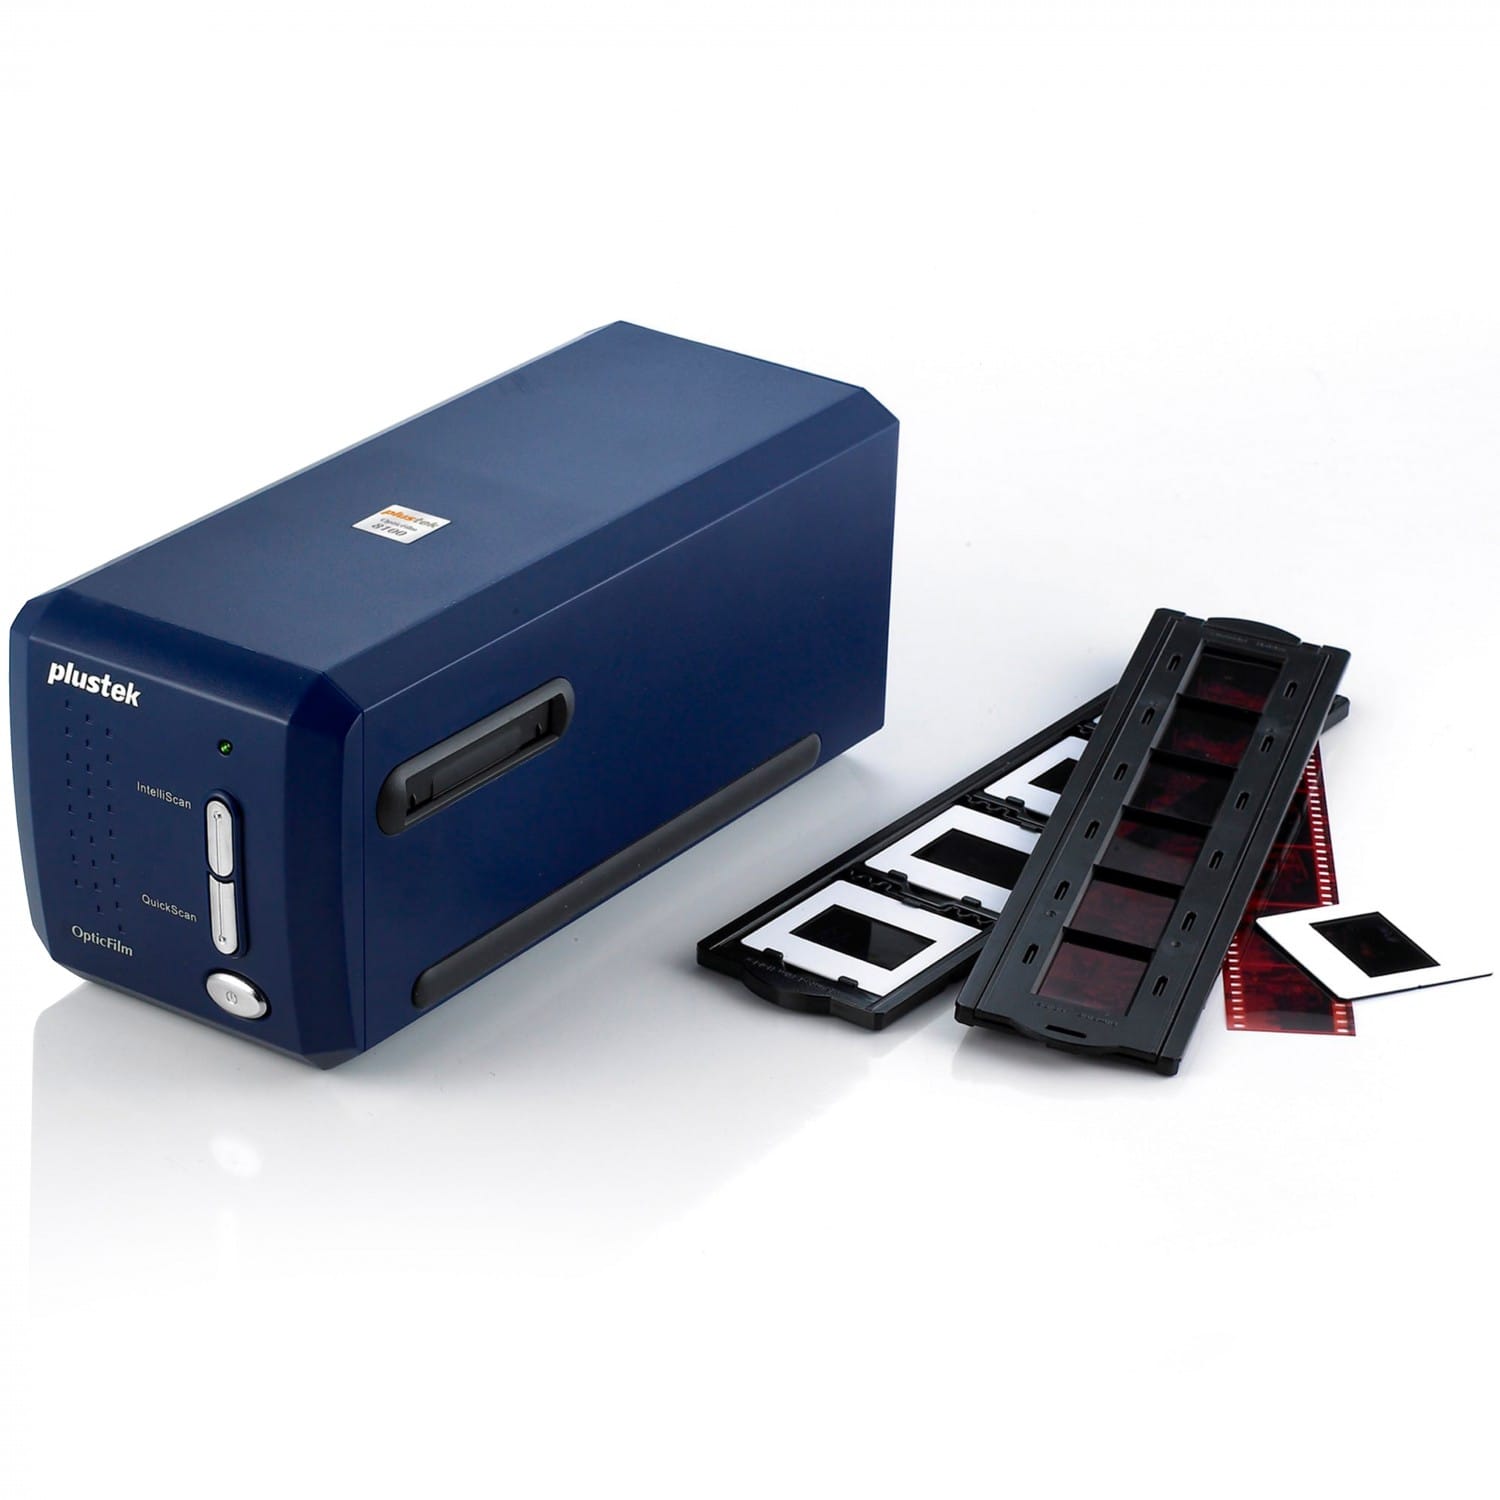 Plustek OpticFilm 8100 - Scanner Diapo Plustek 7200 dpi